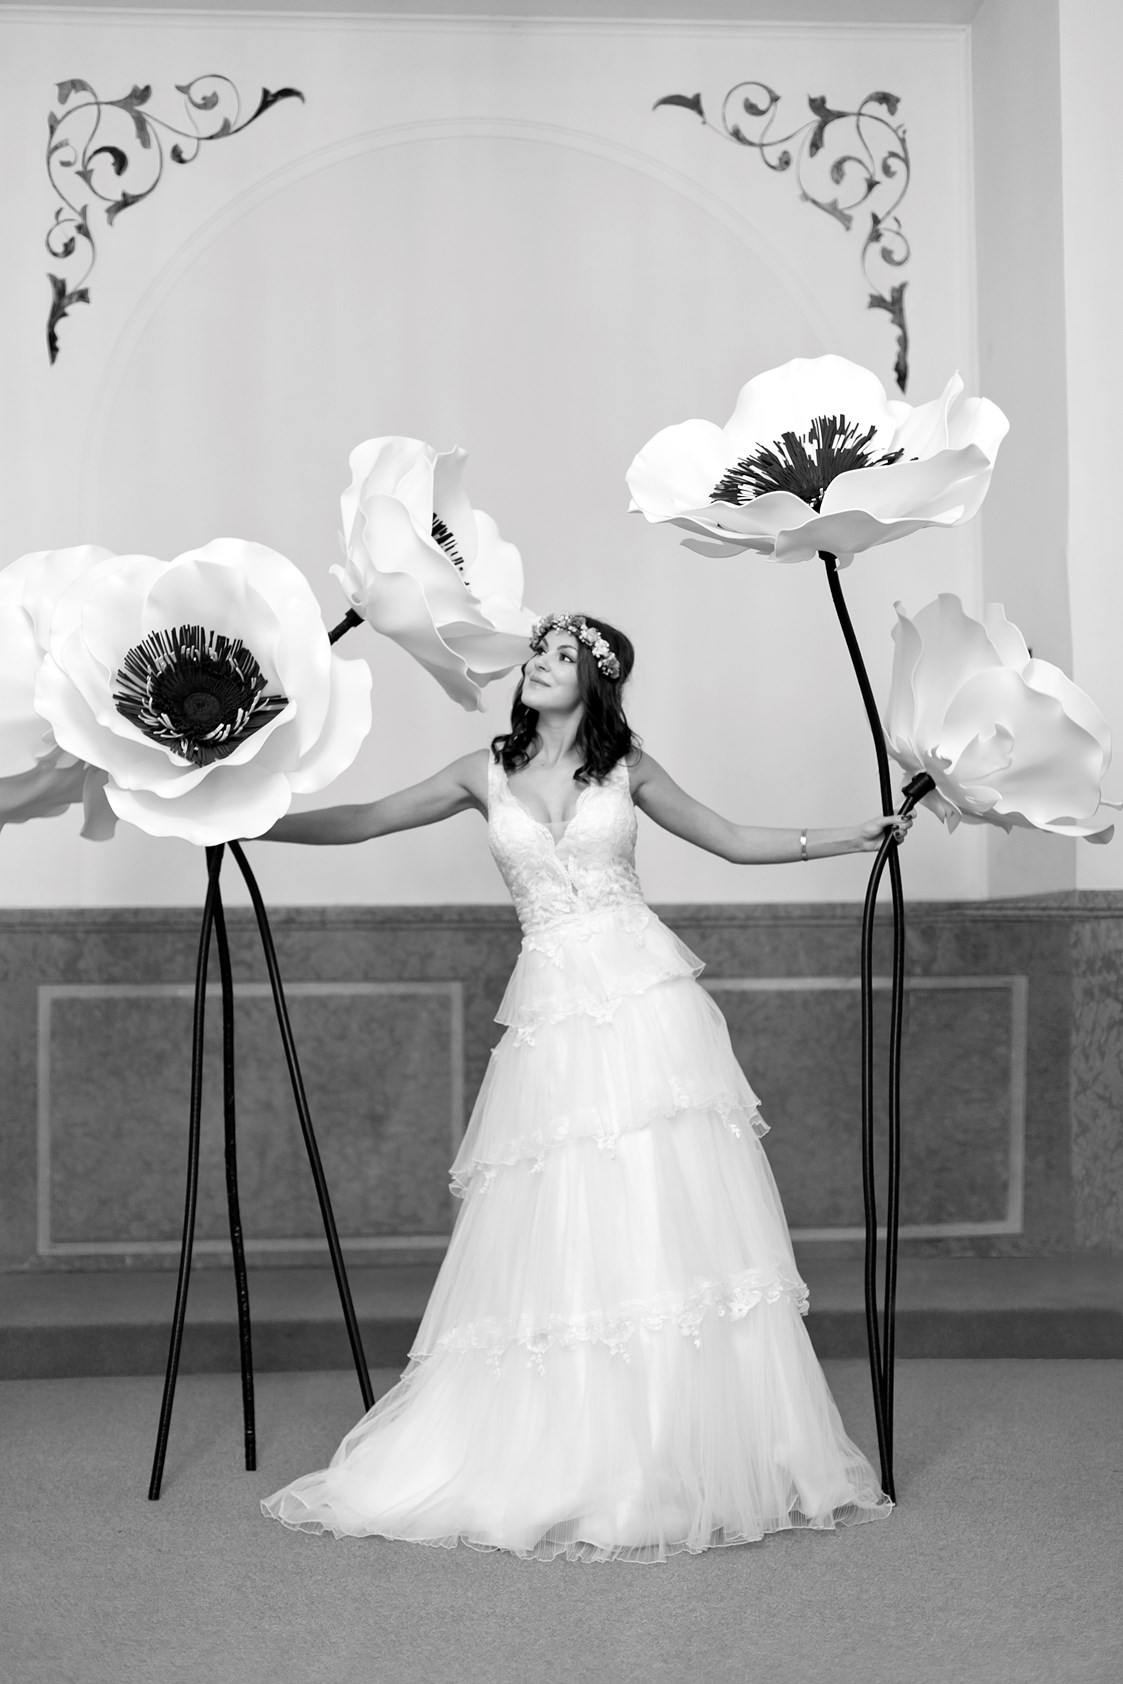 Hochzeitsfotograf: "Braut mit Blumen" - Fotografenmeisterin Aleksandra Marsfelden